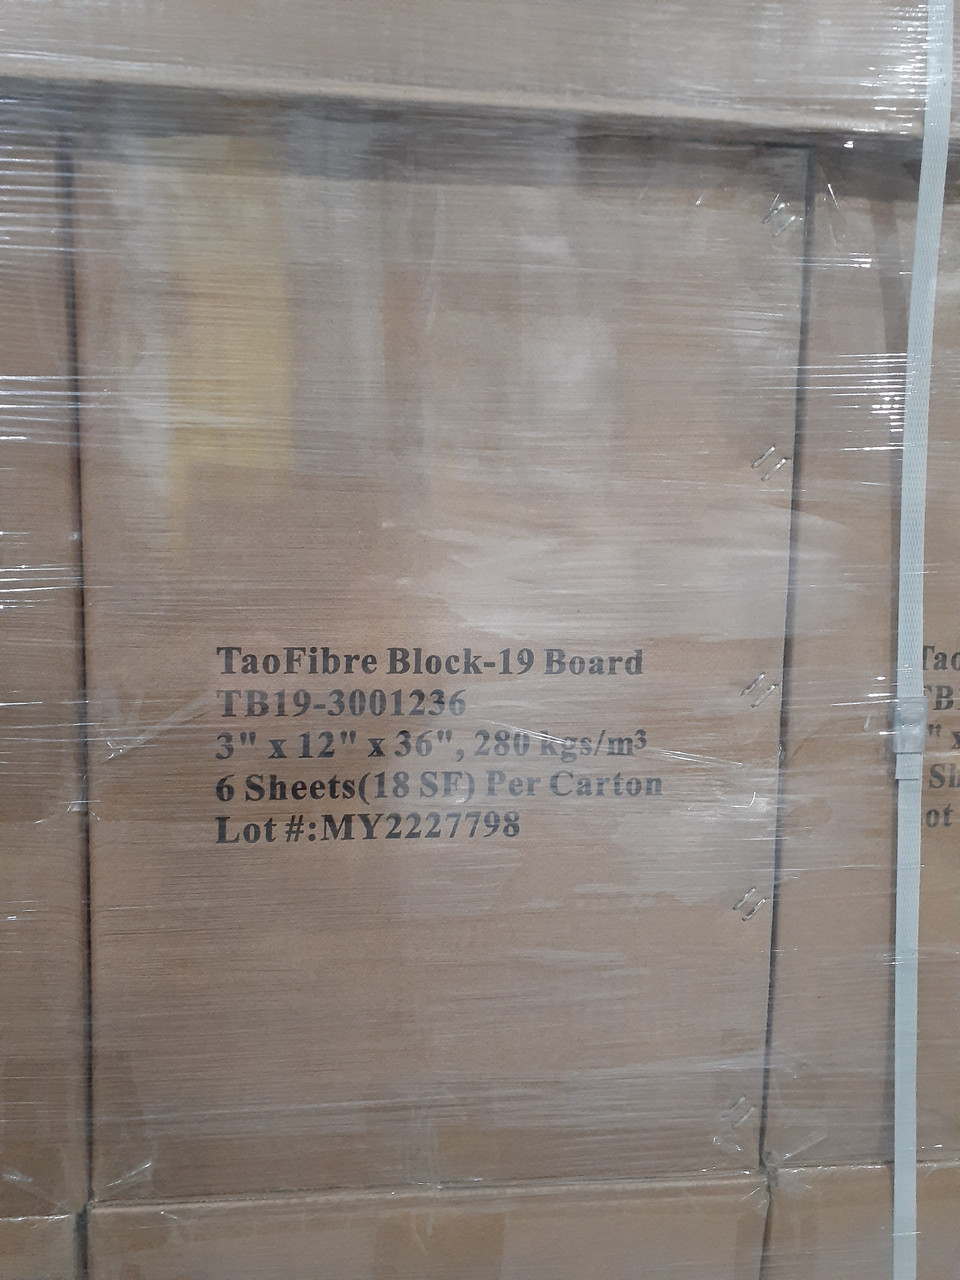 TaoFibre TB19-3001236 Block-19 Board 3" x 12" x 36", 6 Sheets Per Carton